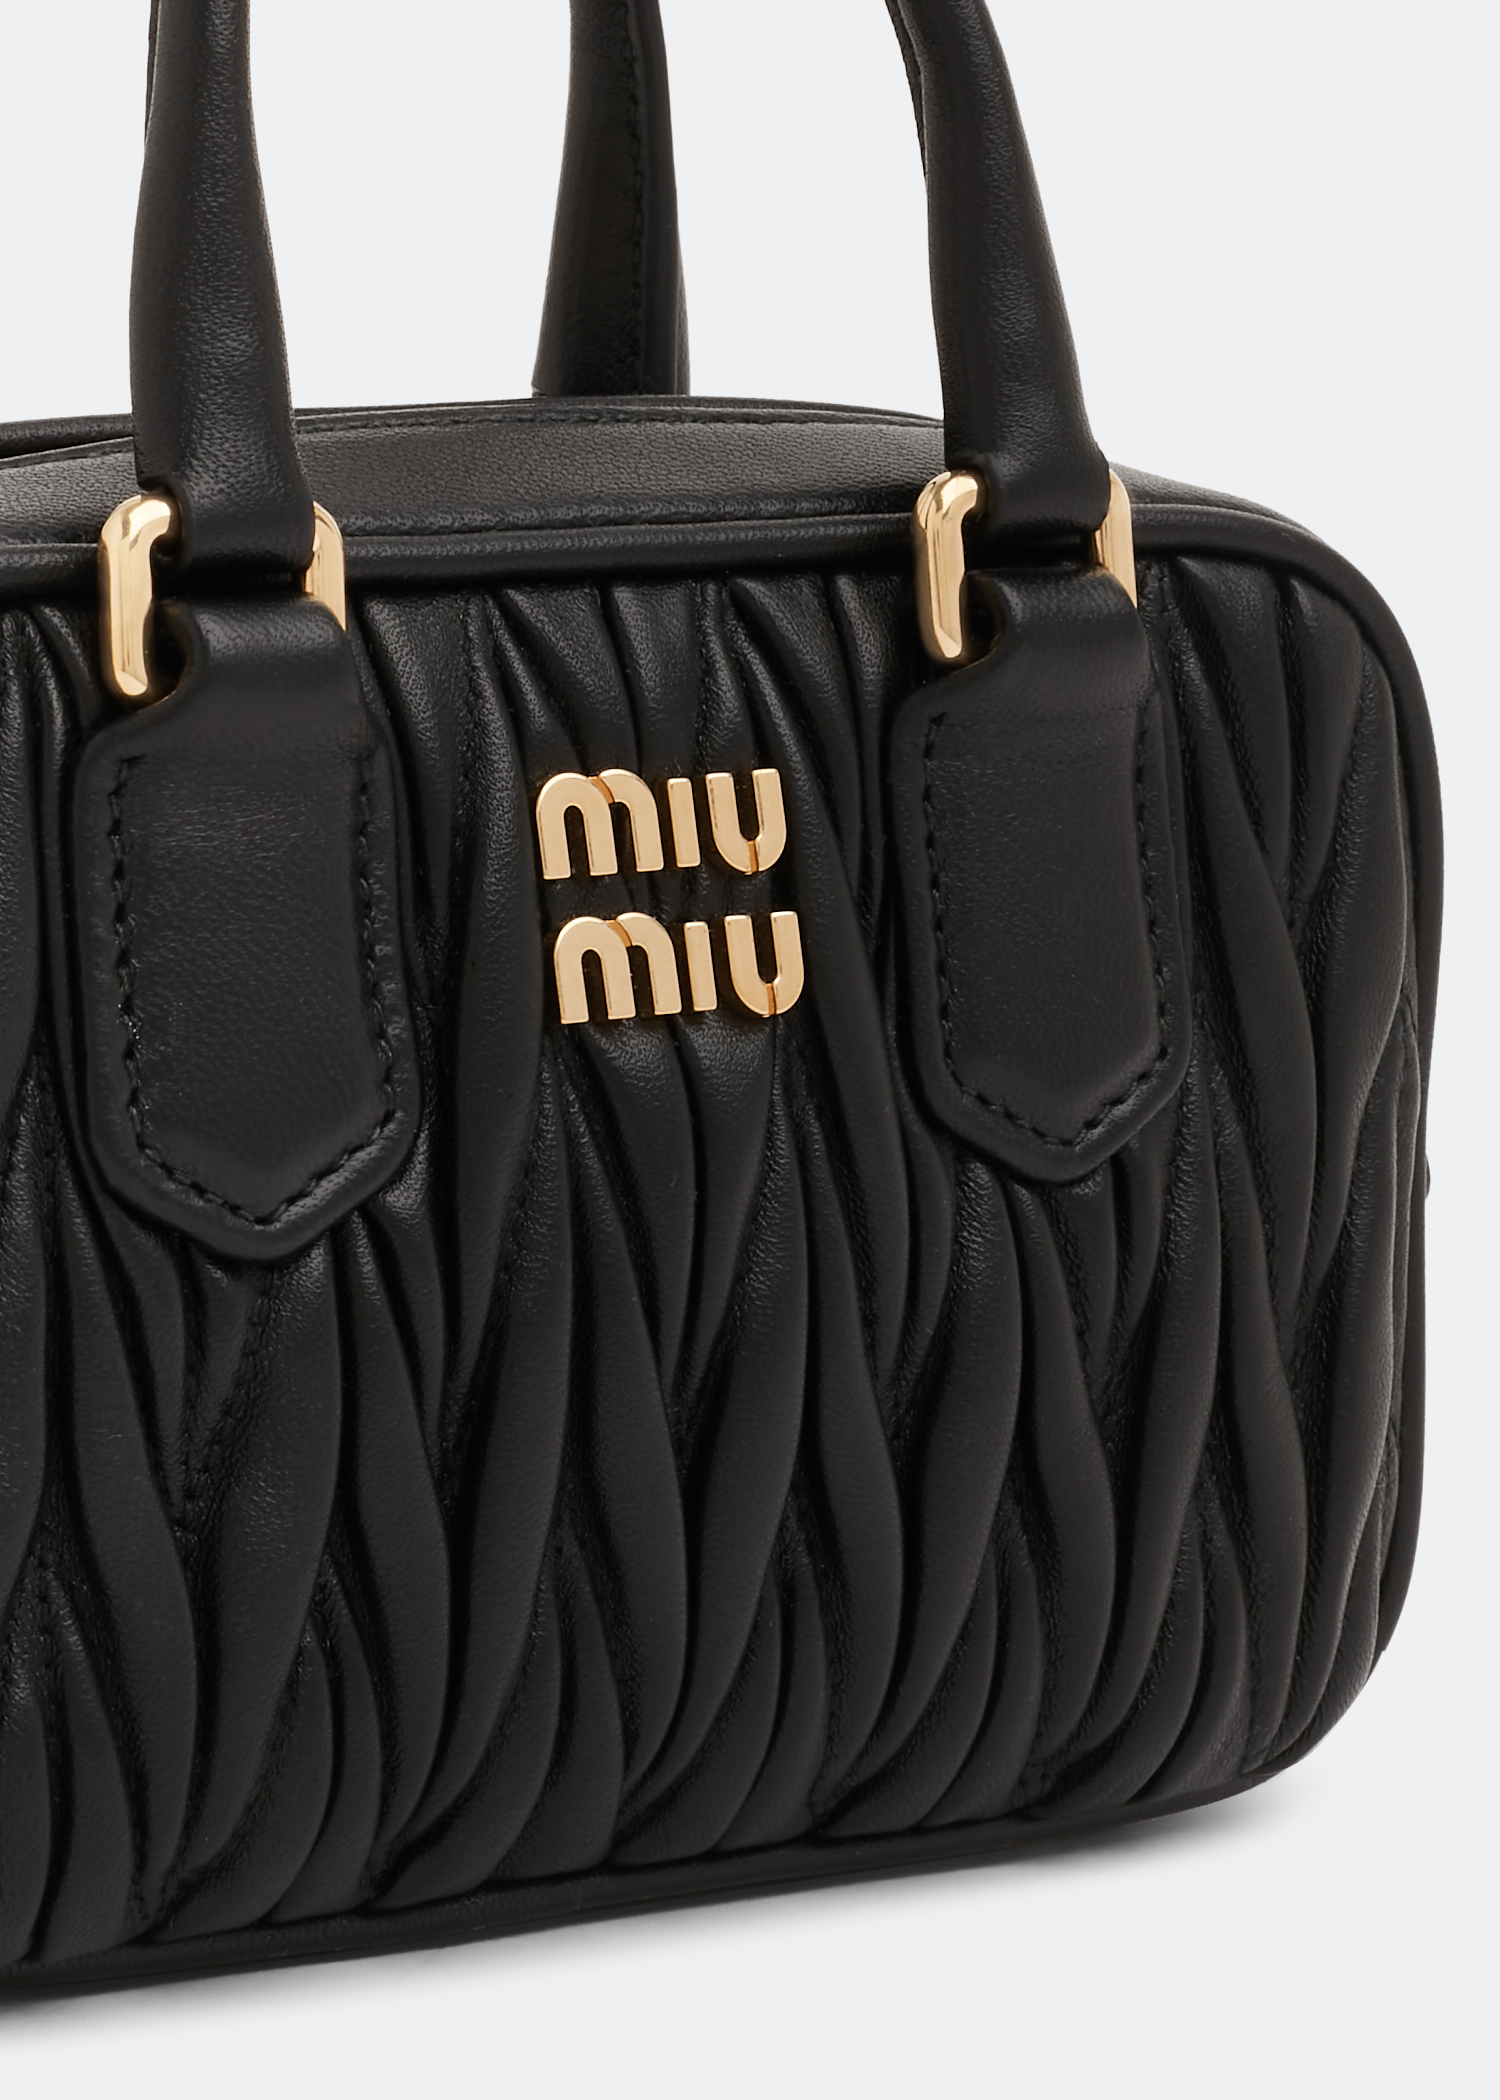 Buy Miu Miu Black Mini Crossbody Bag in Matelassé Nappa Leather for WOMEN  in Oman